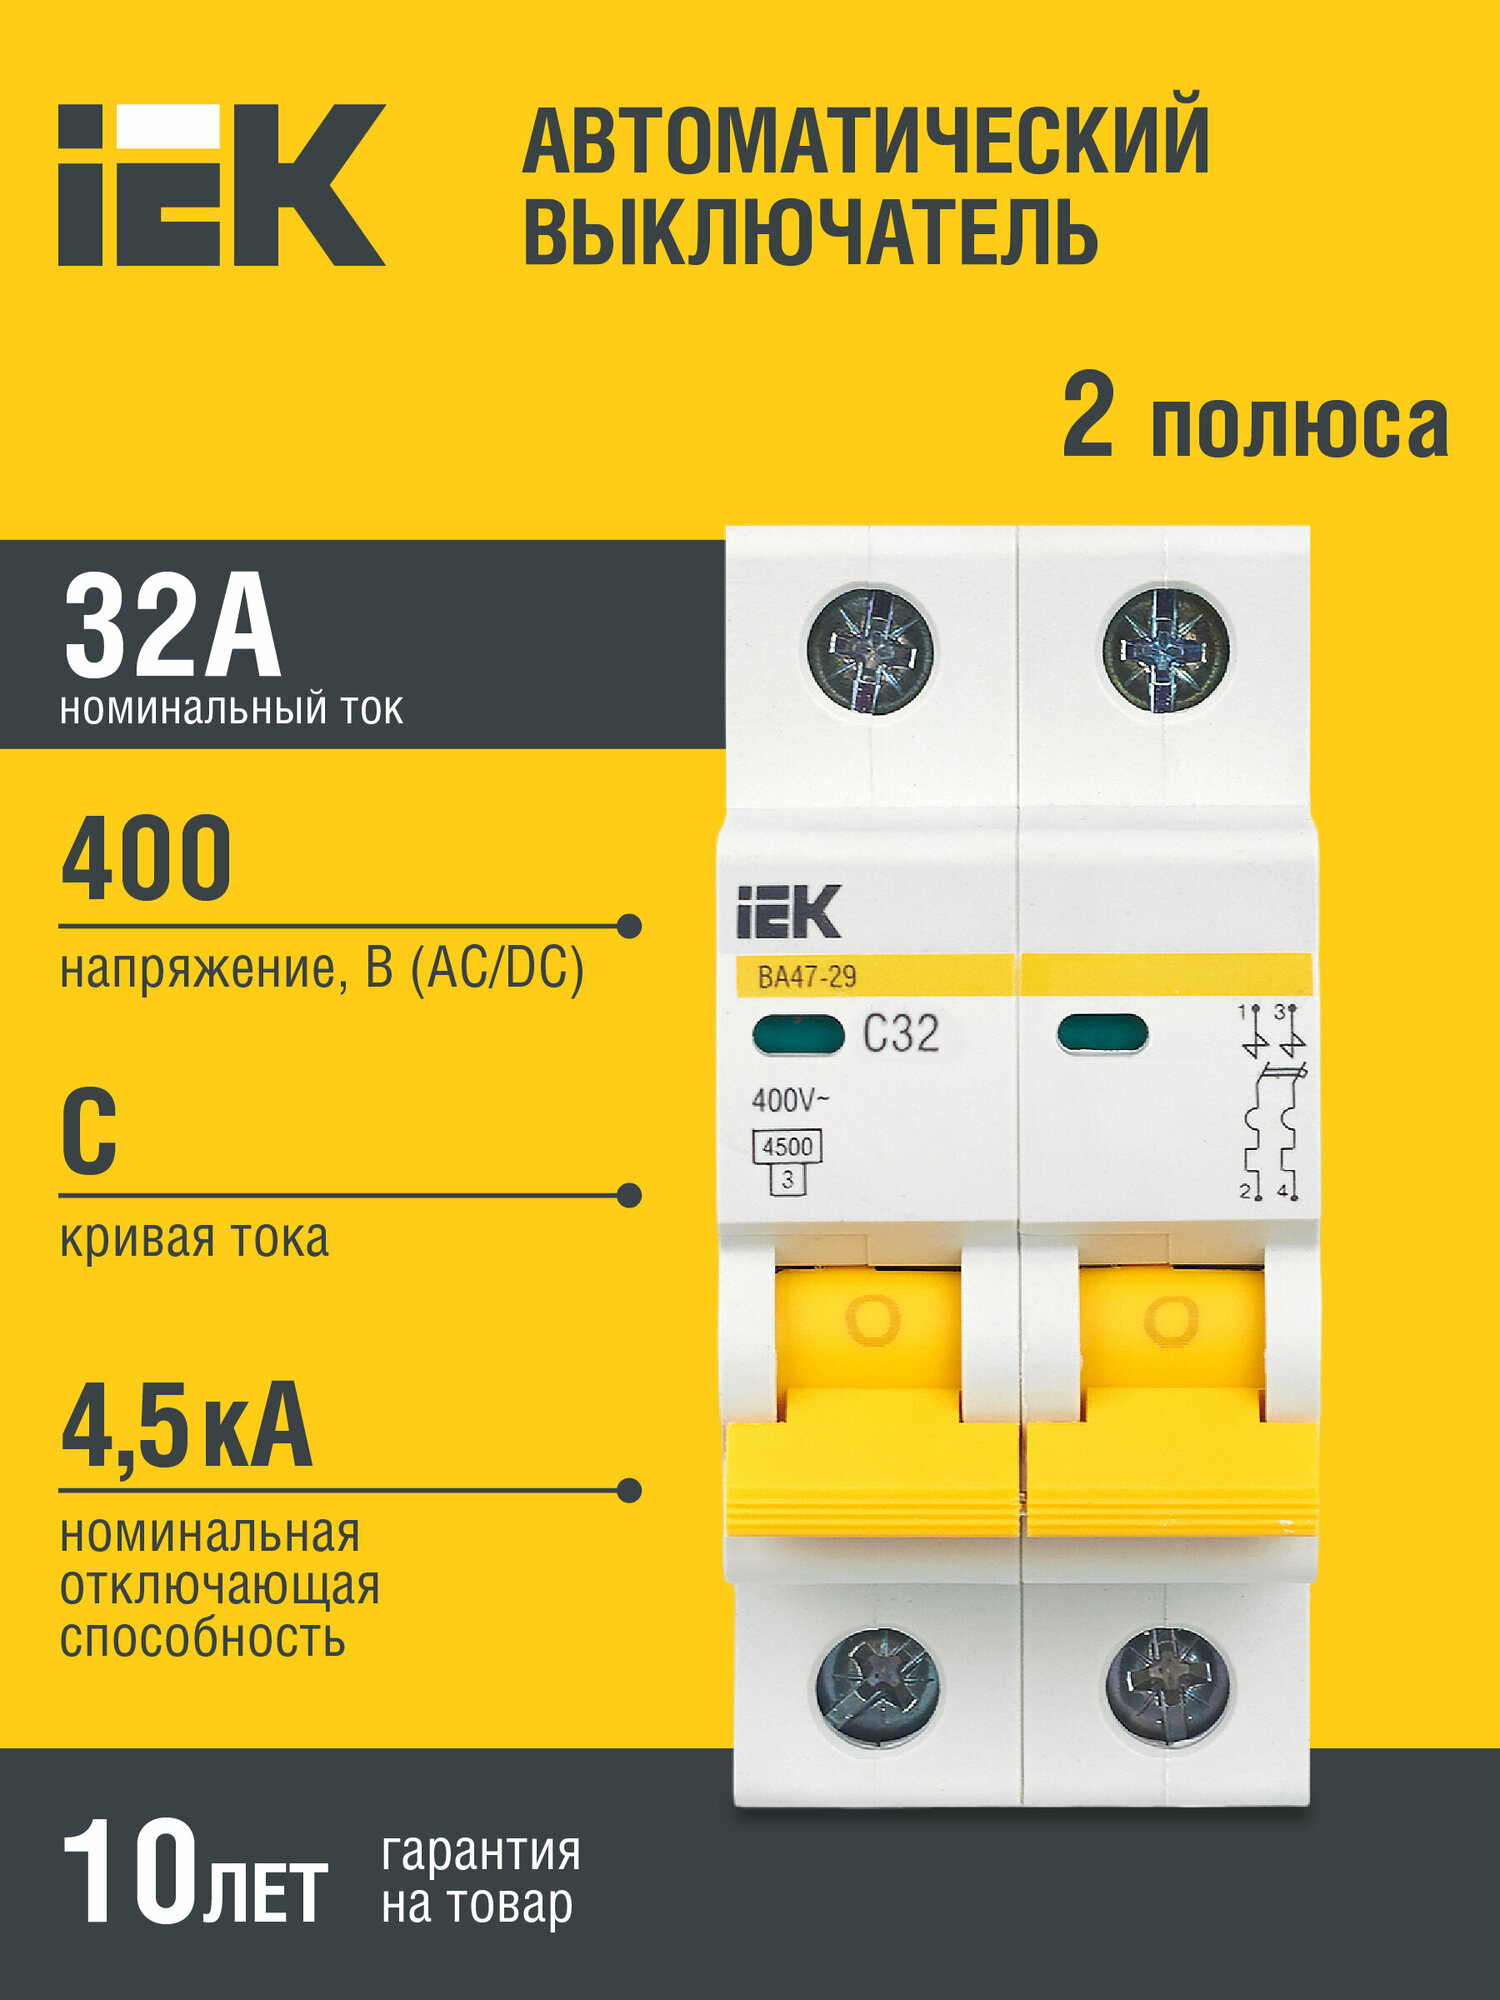 Автоматический выключатель IEK ВА 47-29 (C) электромагнитный 45kA